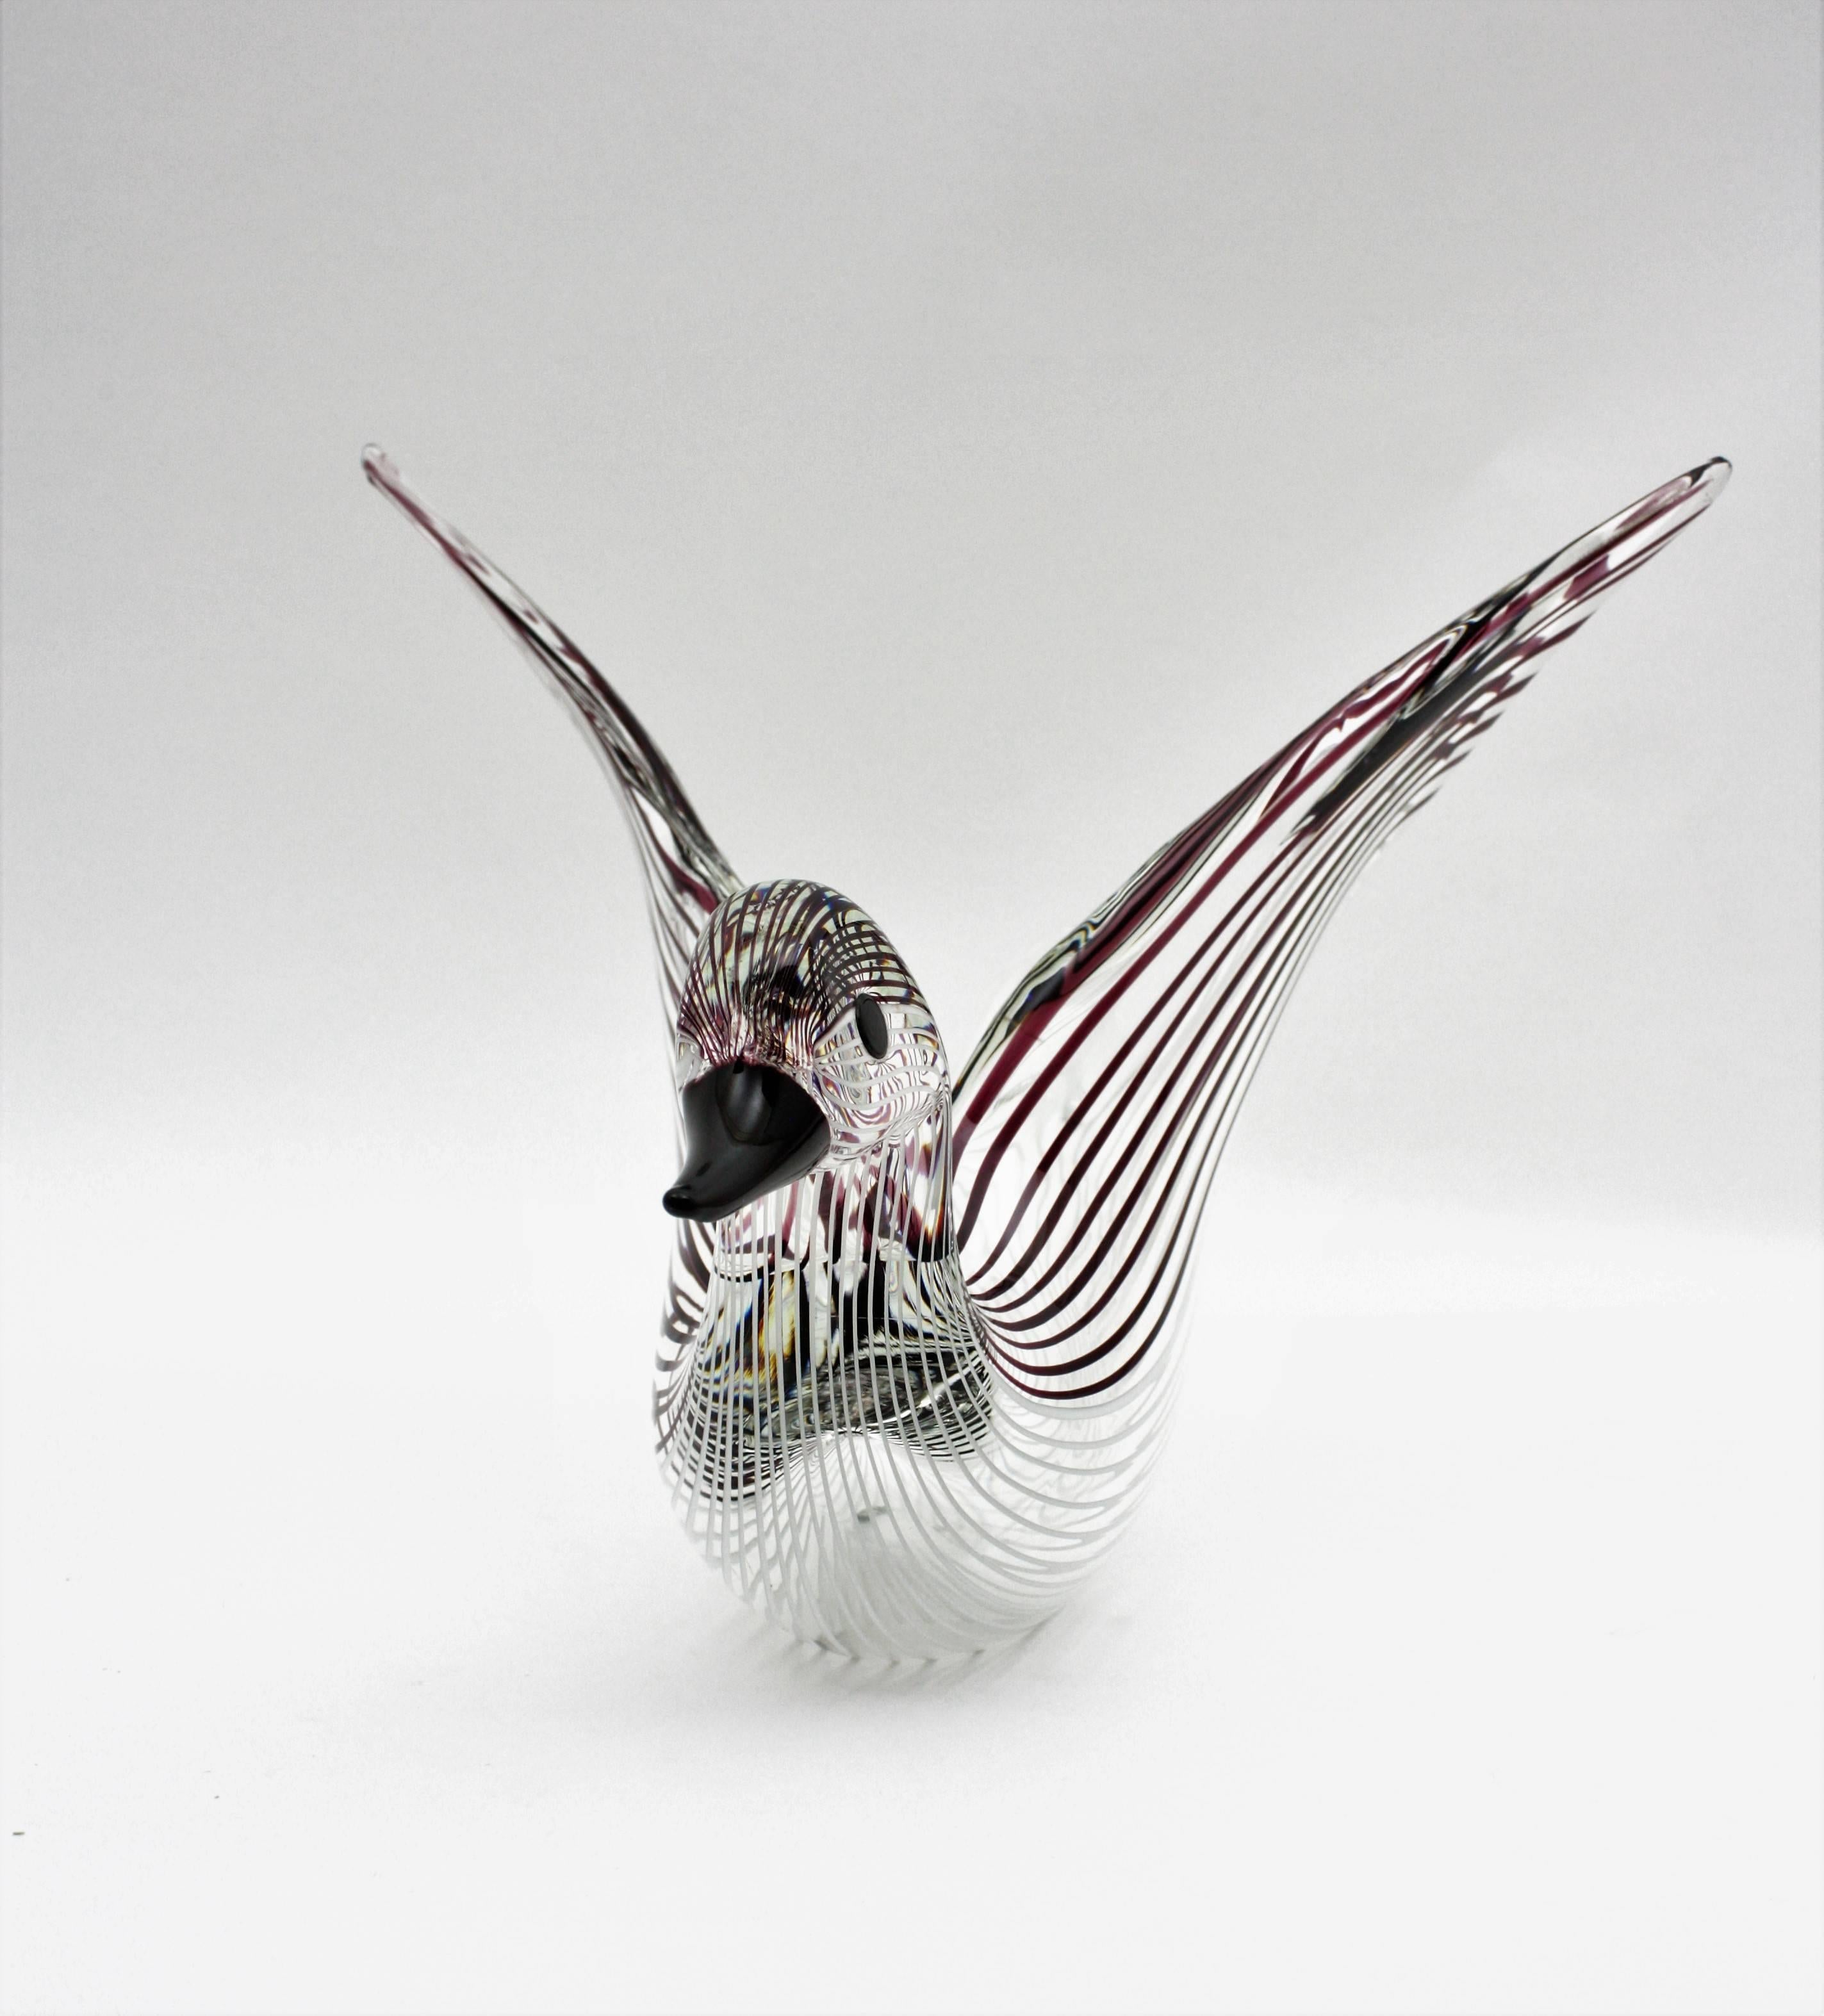 20th Century Large Licio Zanetti Striped Murano Glass Open Wings Duck Sculpture or Vase